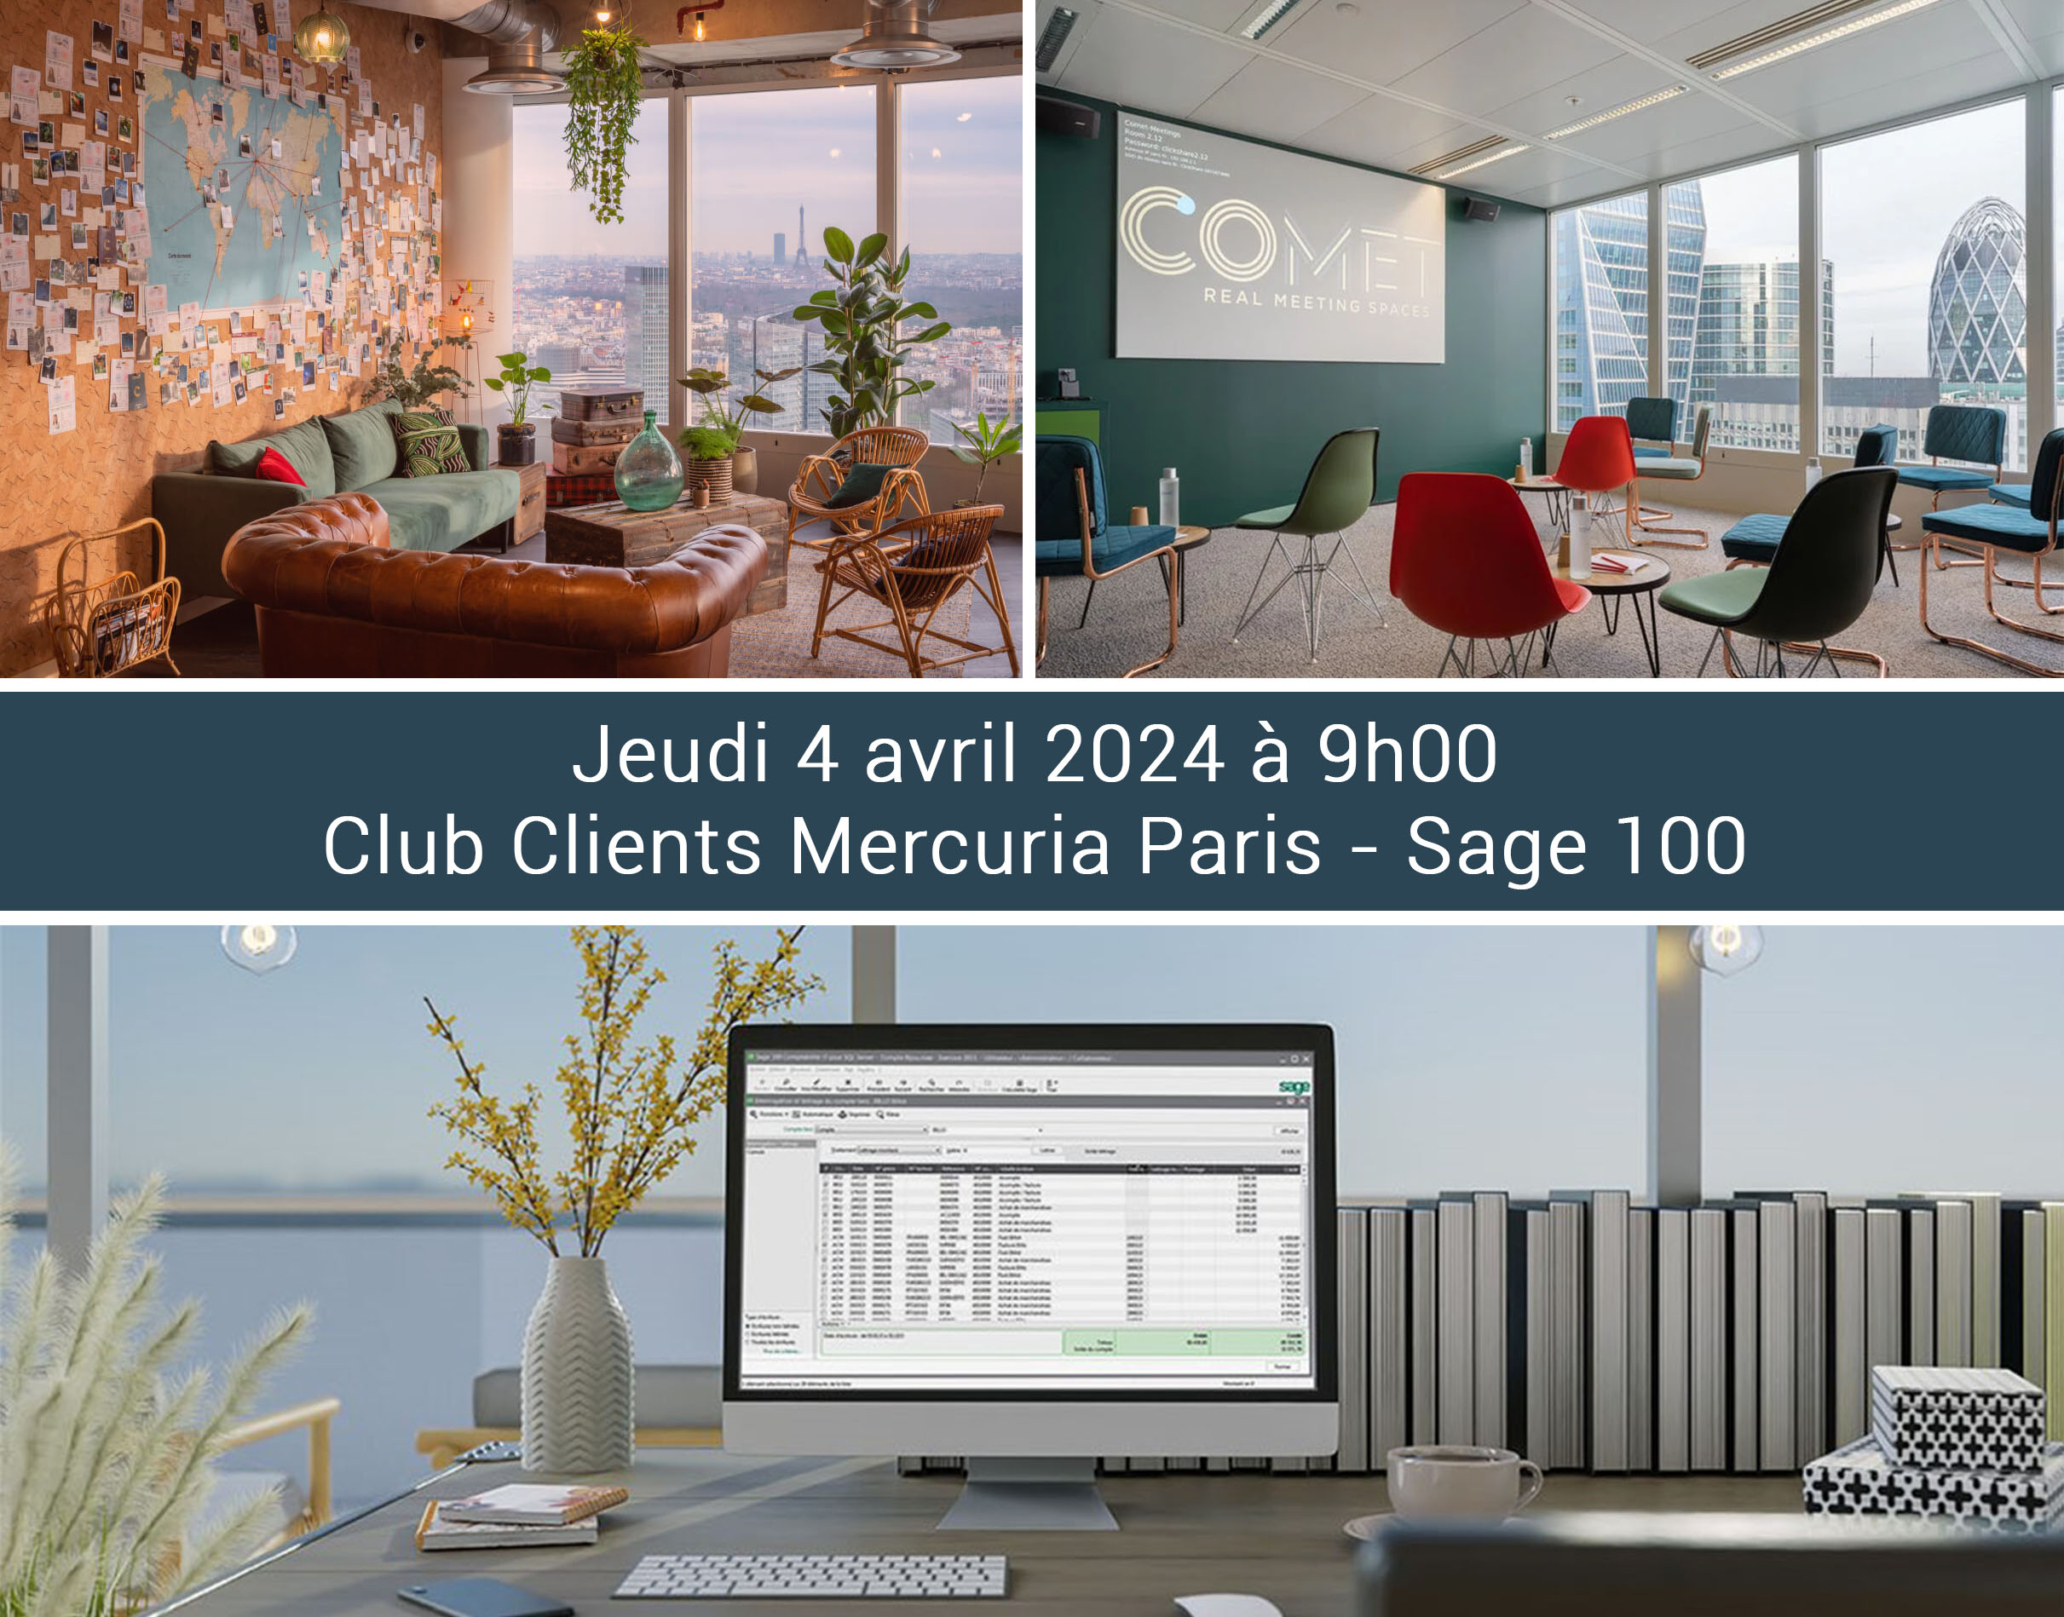 Mercuria_Club Clients Sage 100_COMET Paris_Avril 24